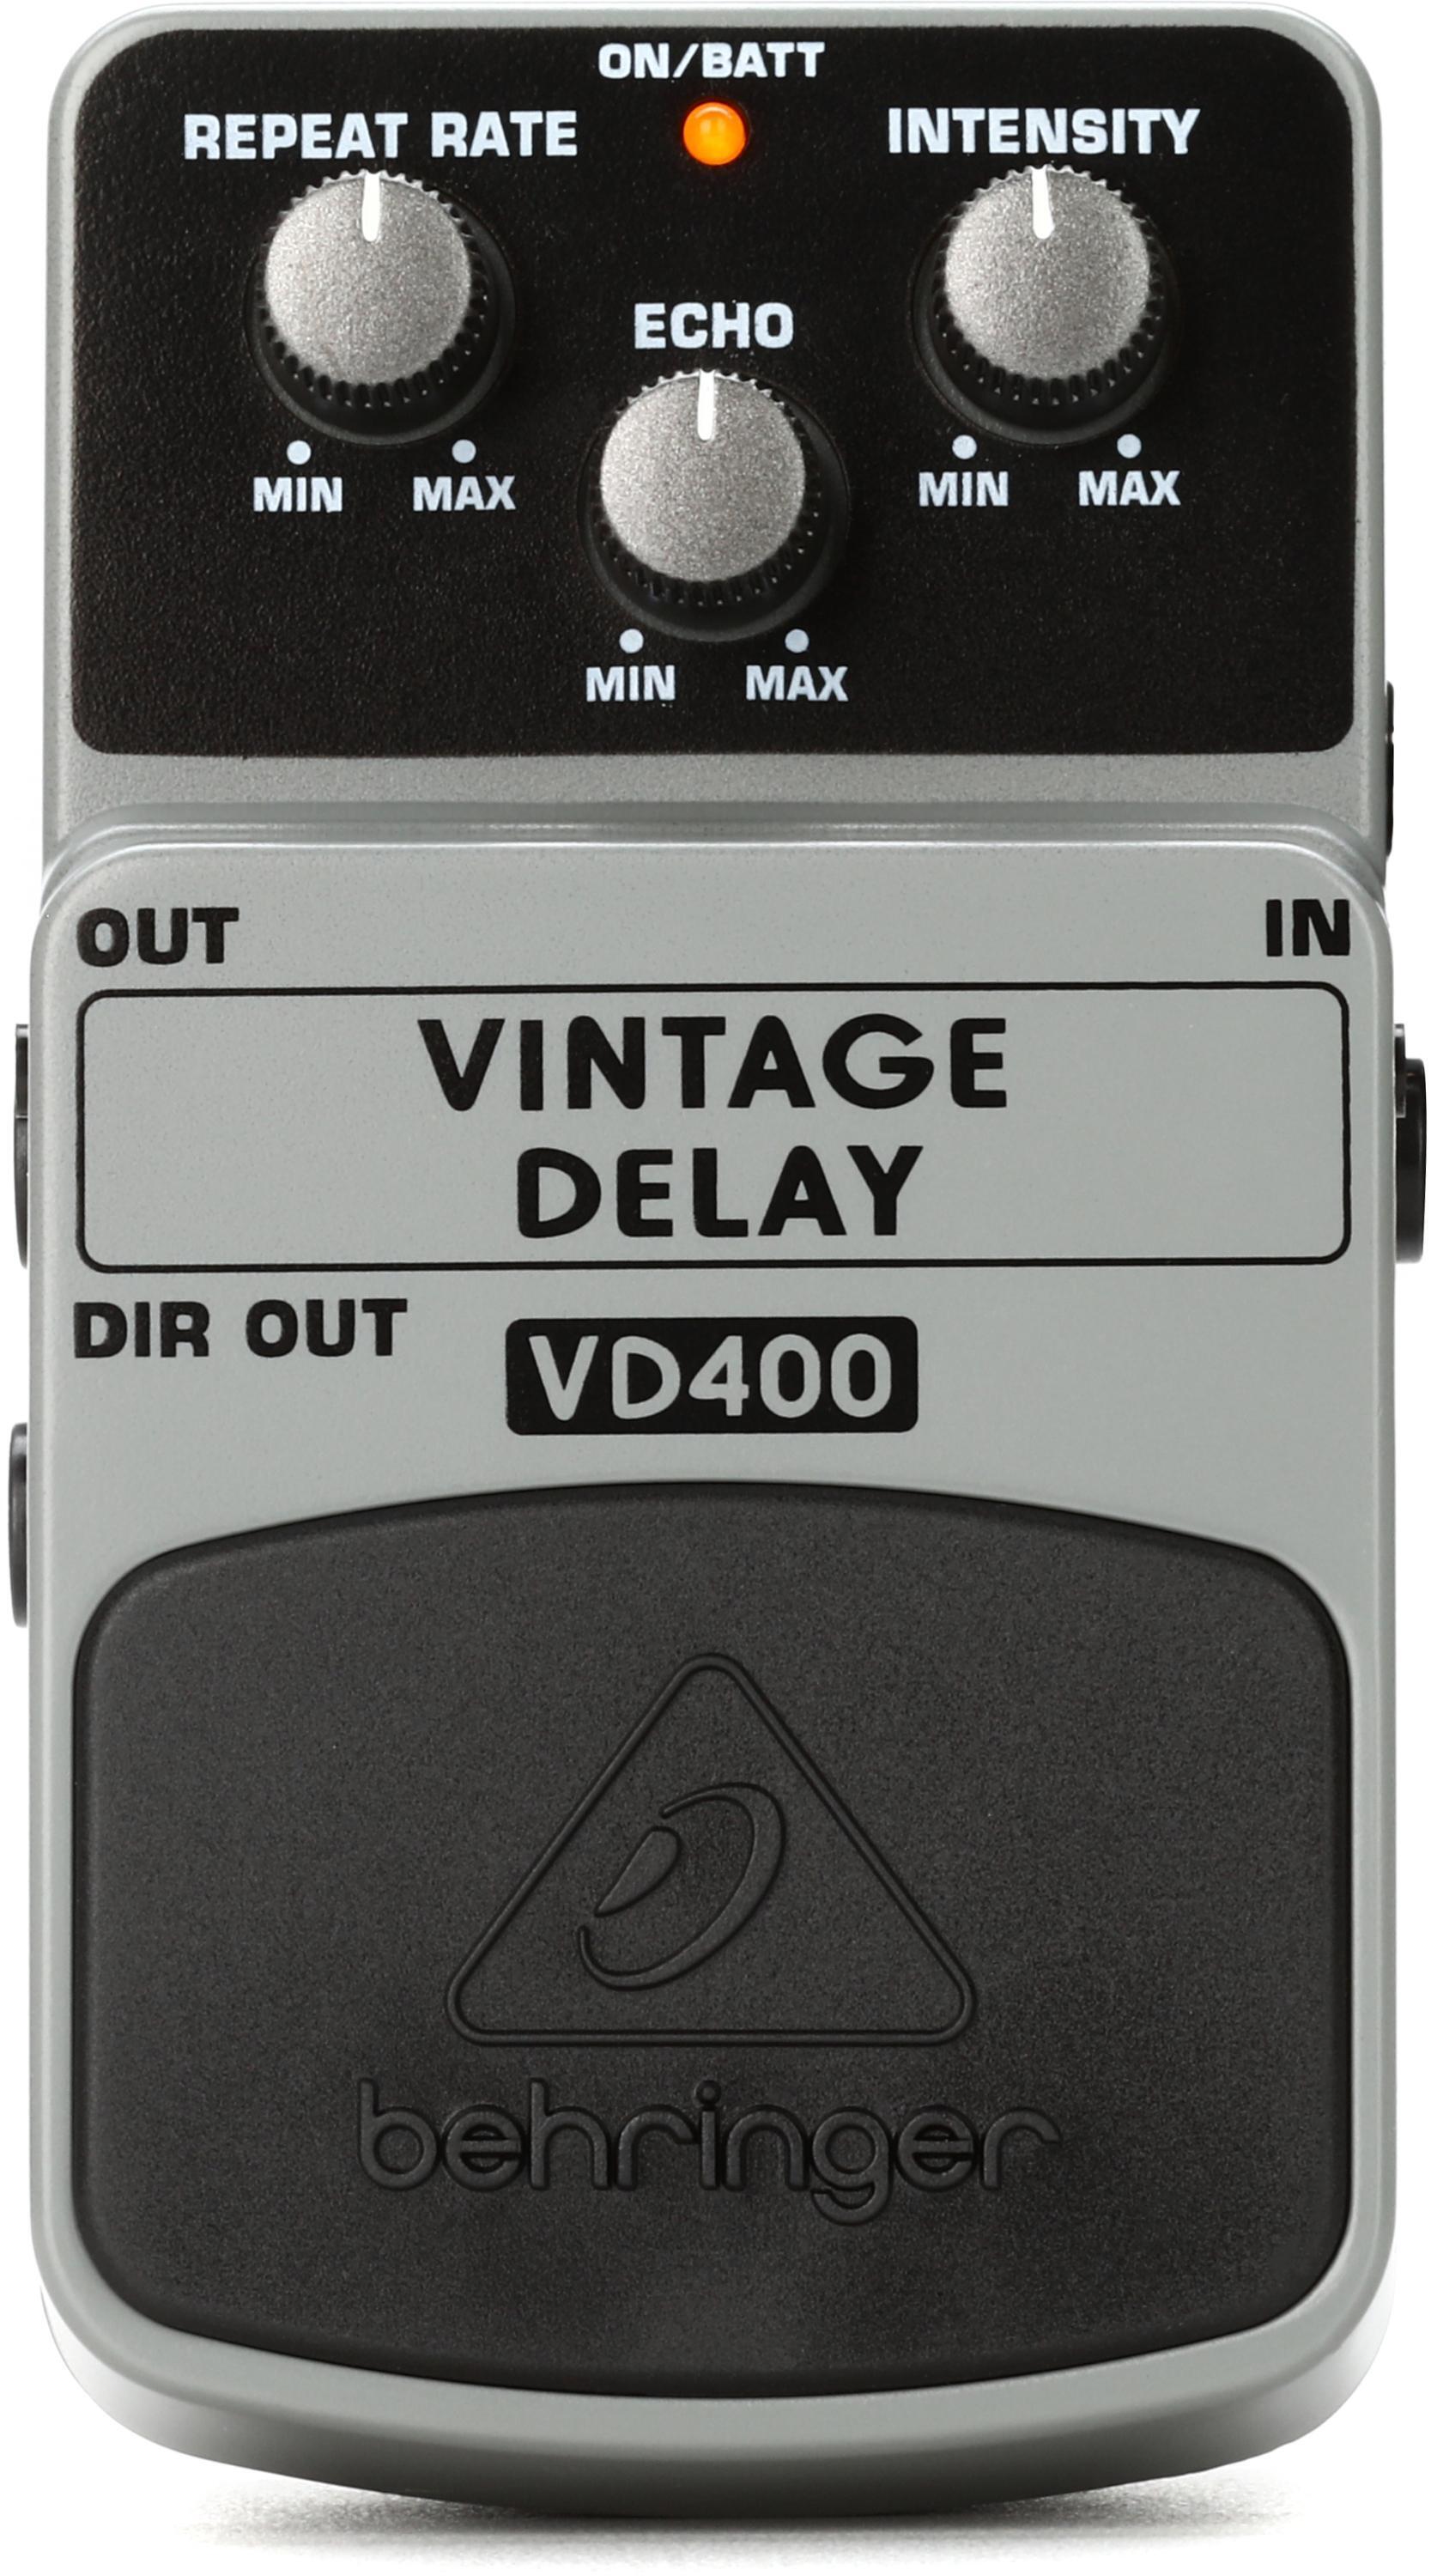 Bundled Item: Behringer VD400 Vintage Delay Pedal